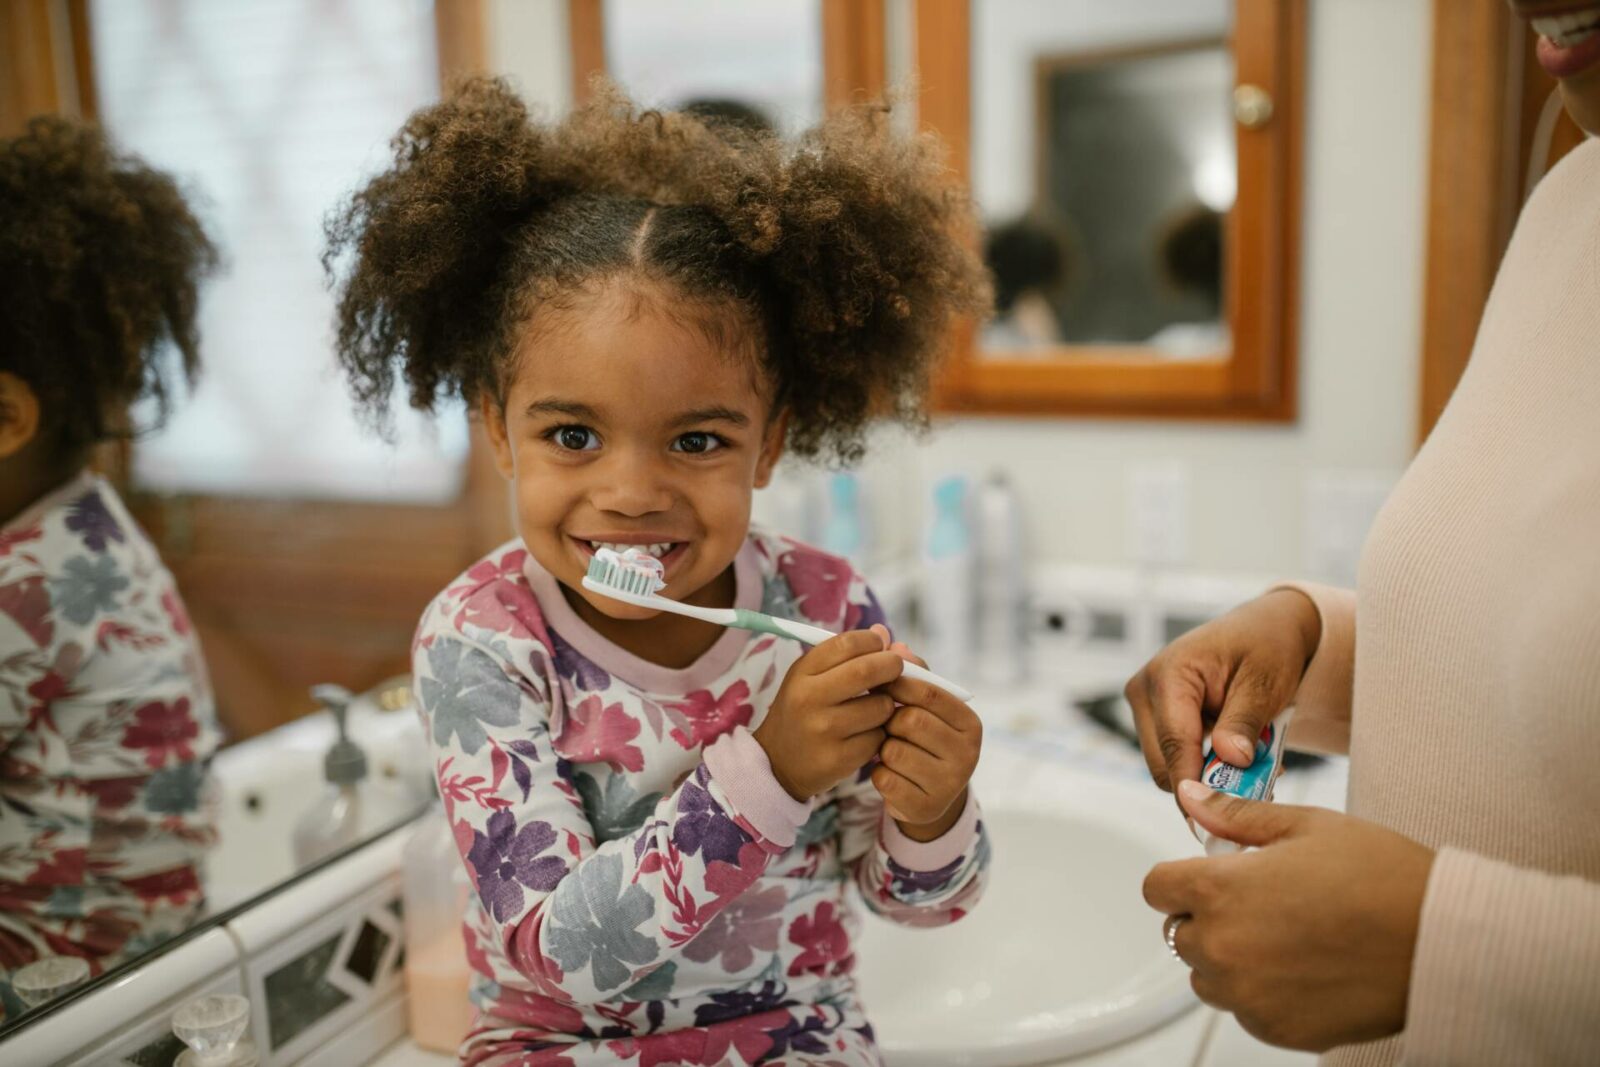 Bà mụ và Cuộc sống – Hướng dẫn Toàn diện về Chăm sóc Răng và Kẹo cao su cho Trẻ em: Cách Giữ cho Chúng Khỏe mạnh & Sáng